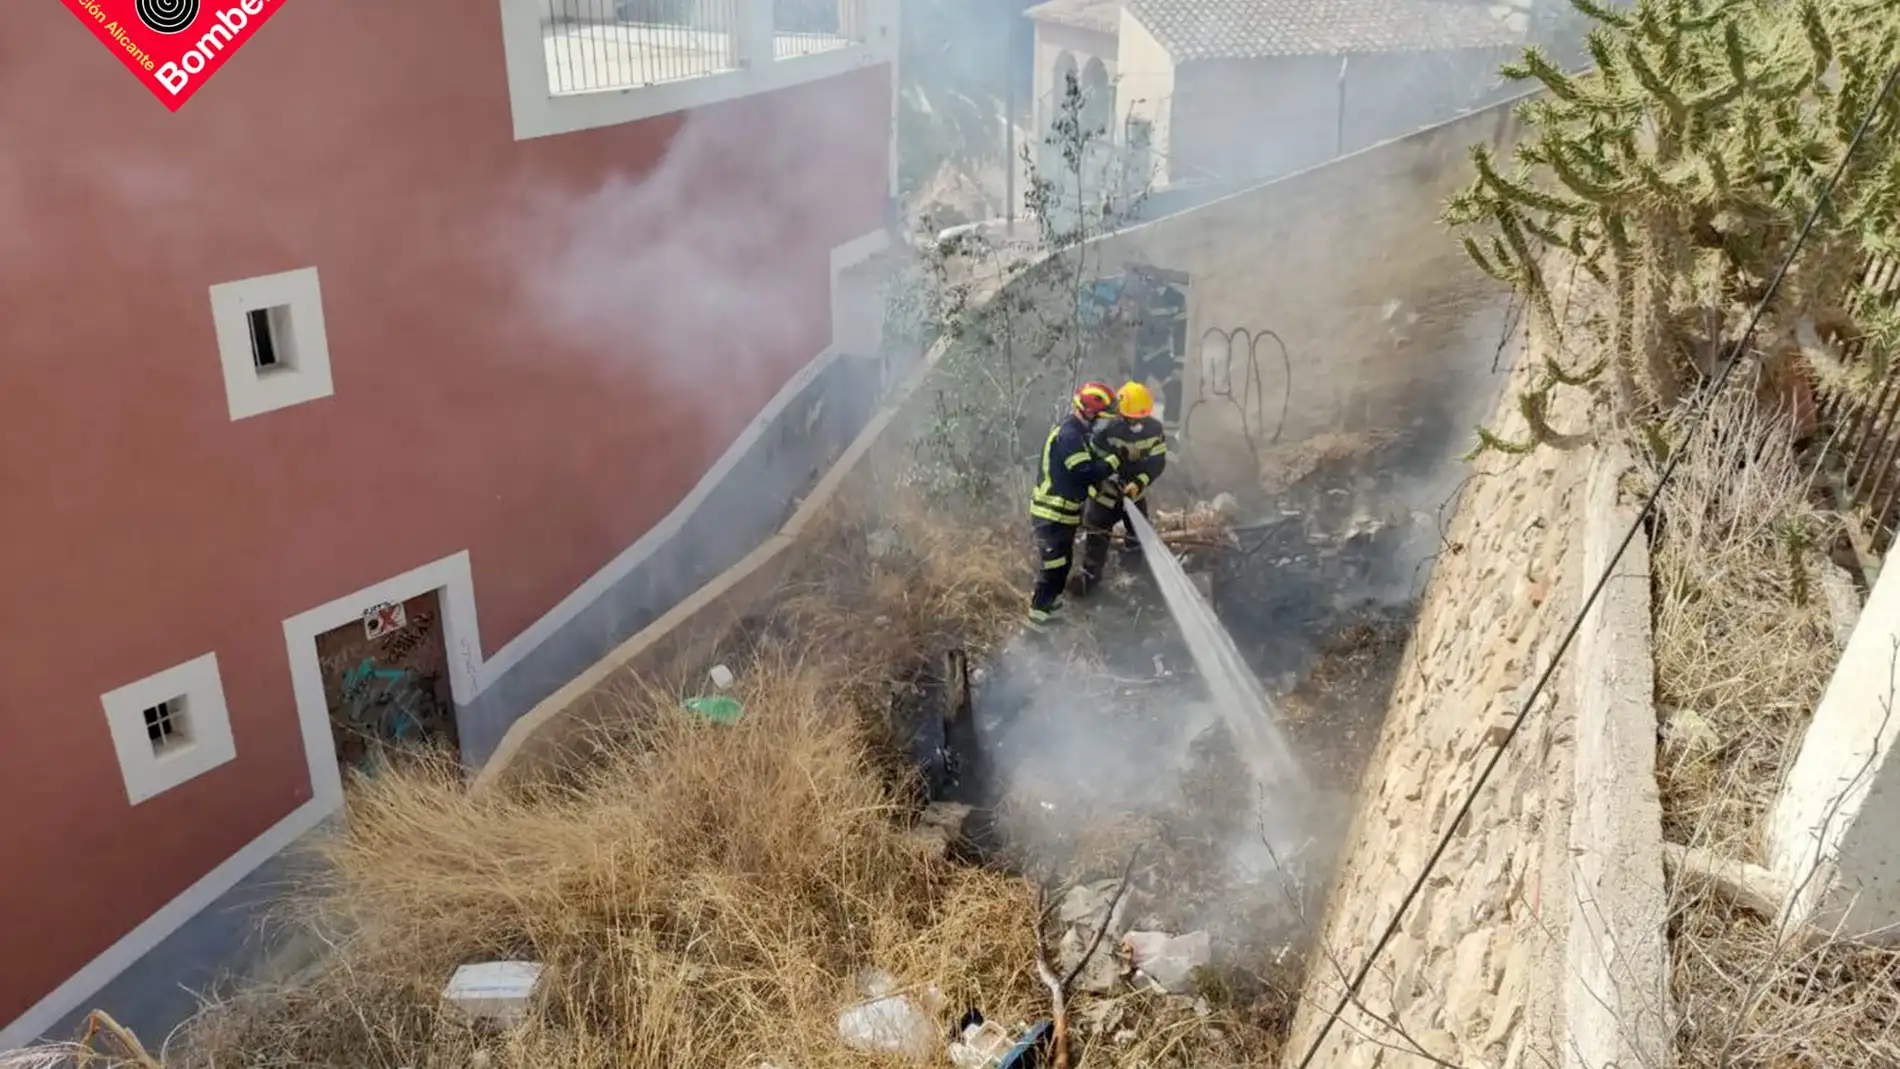 Sofocan un fuego declarado en una parcela con vegetación en La Vila Joiosa 